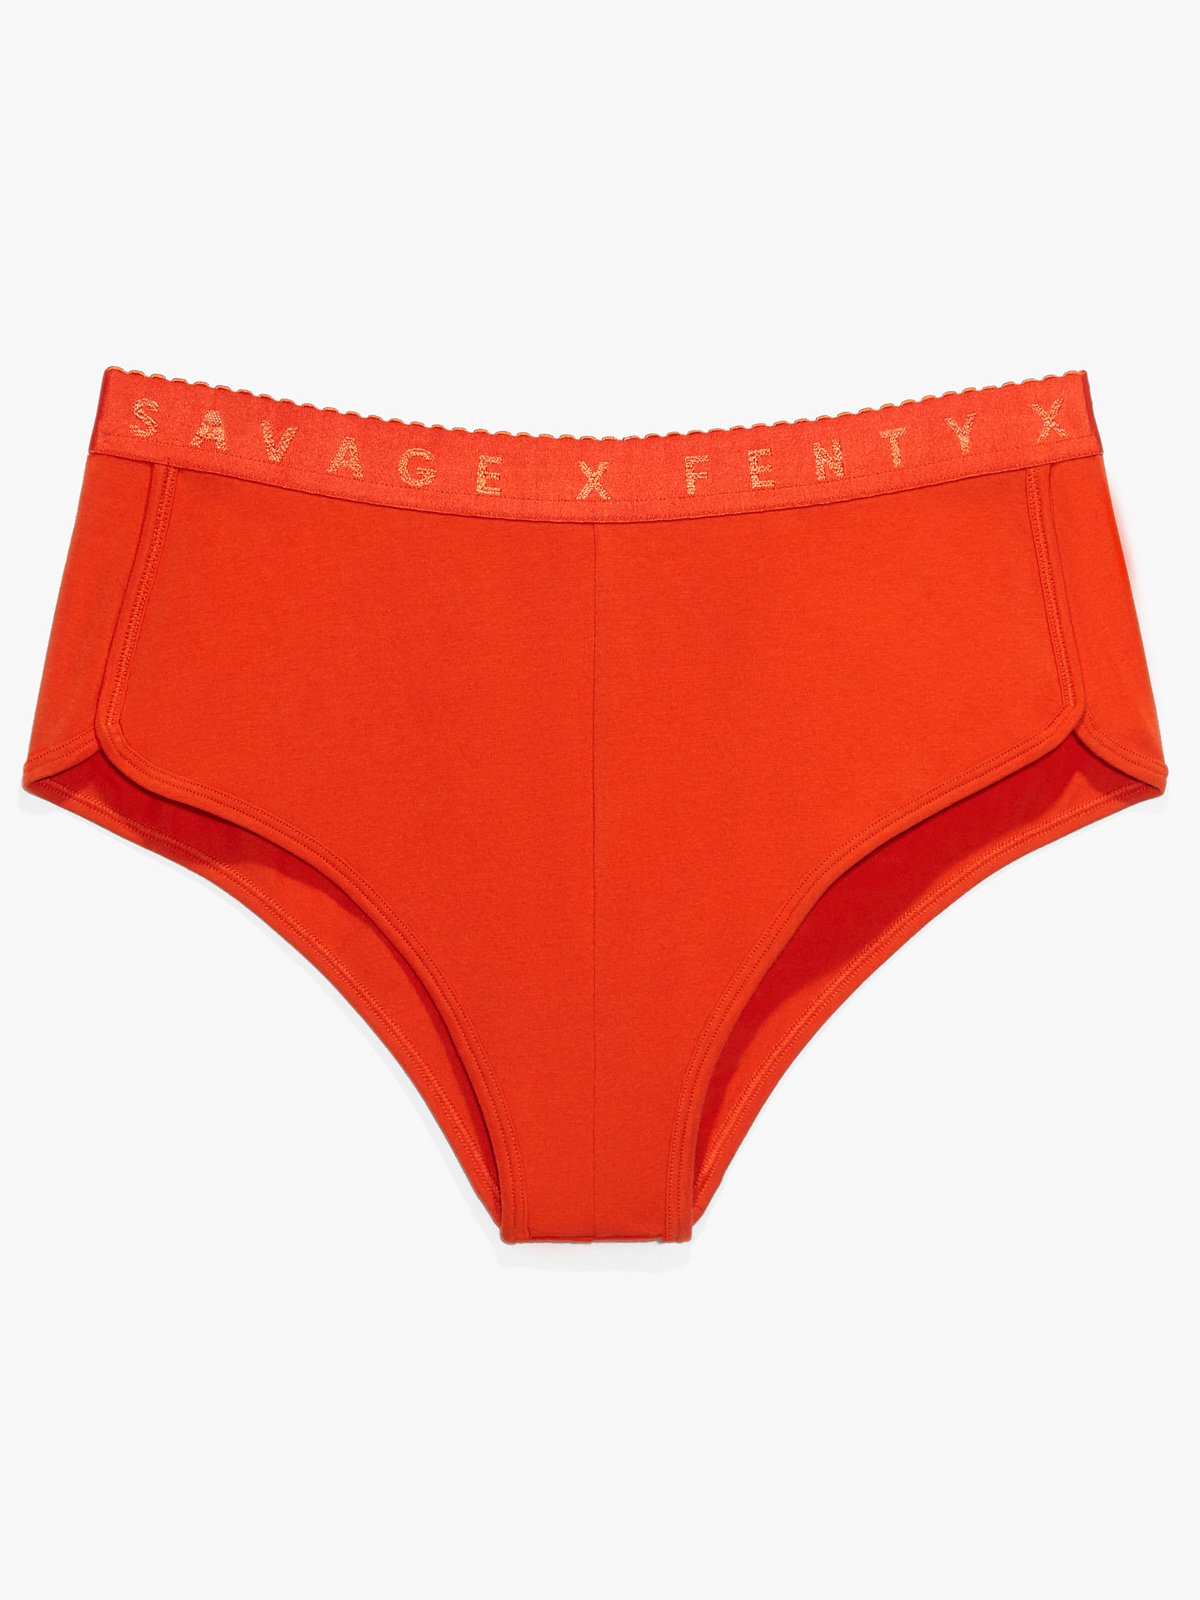 Savage X Cotton Hot Short in Orange & Red | SAVAGE X FENTY